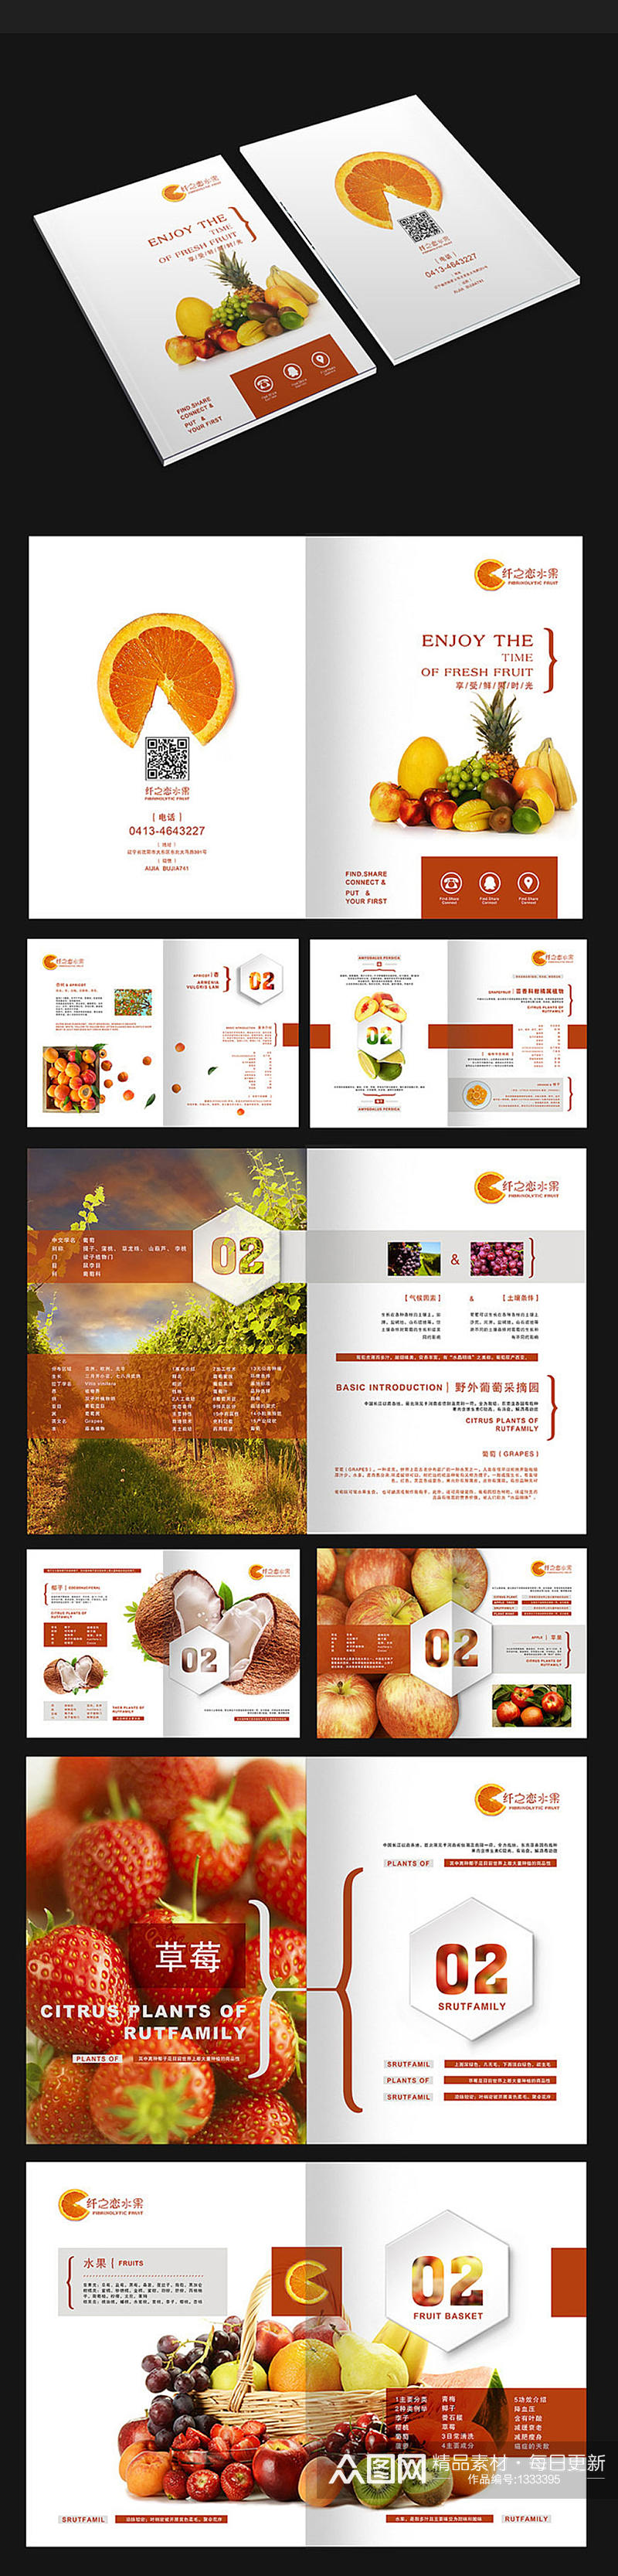 水果清新画册农产品画册设计素材